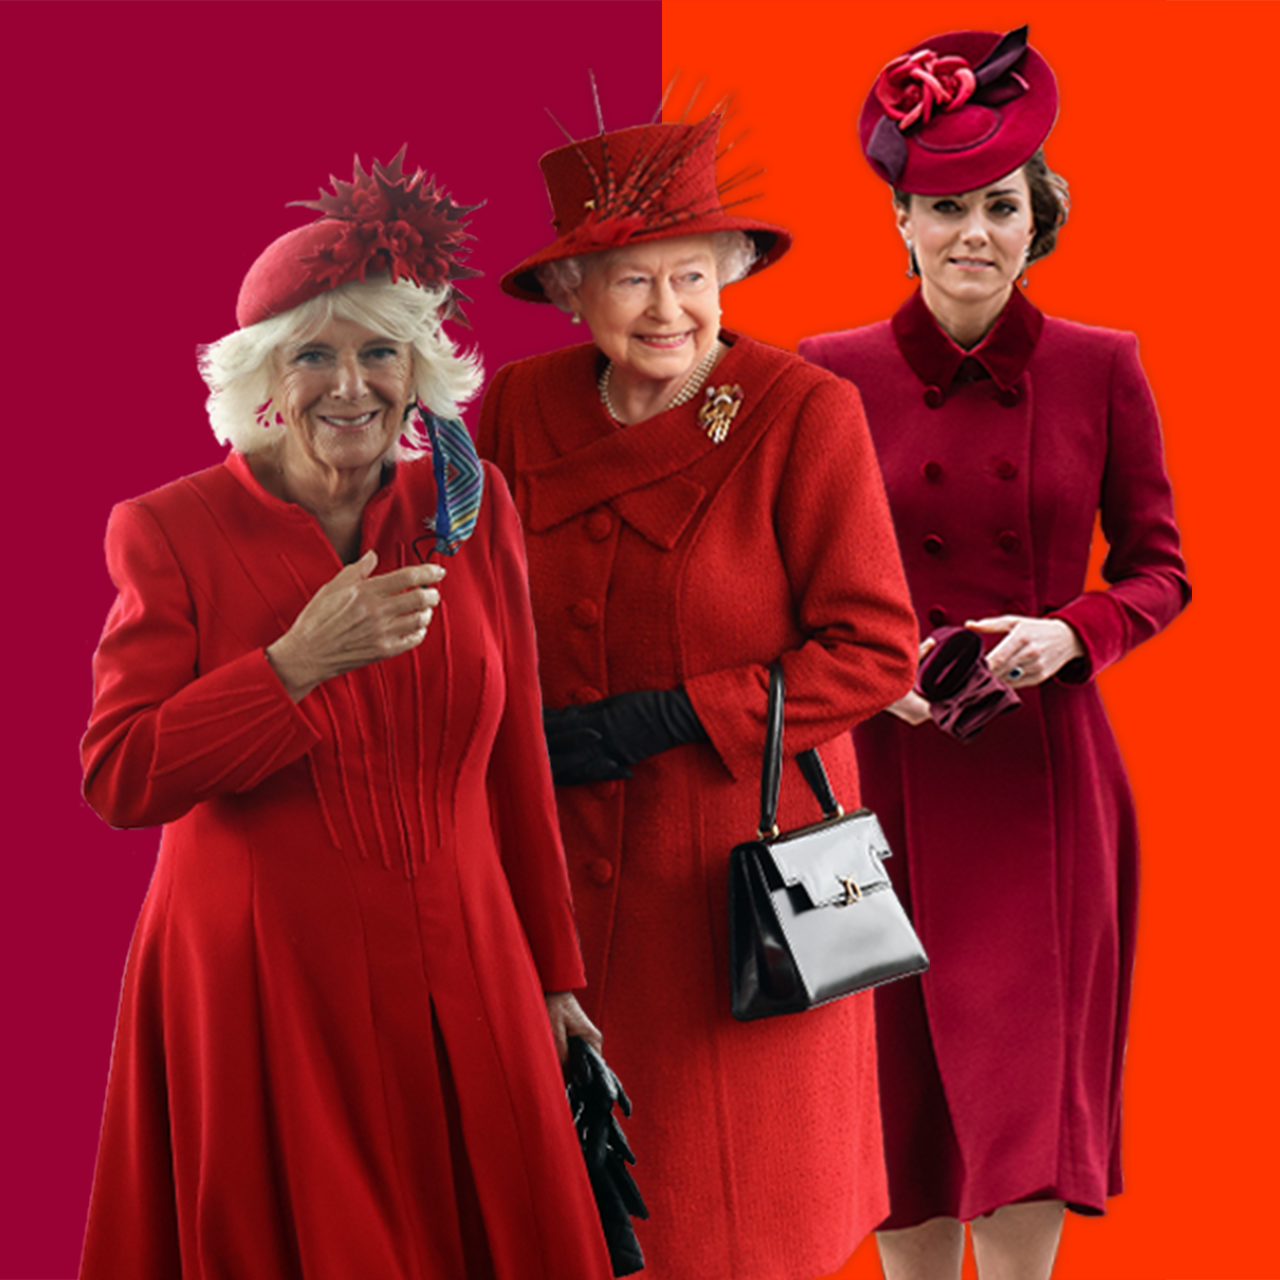 Rainha Elizabeth 2ª, Camilla (duquesa da Cornualha) e Kate (duquesa de Cambridge), todas vestindo roupas vermelhas